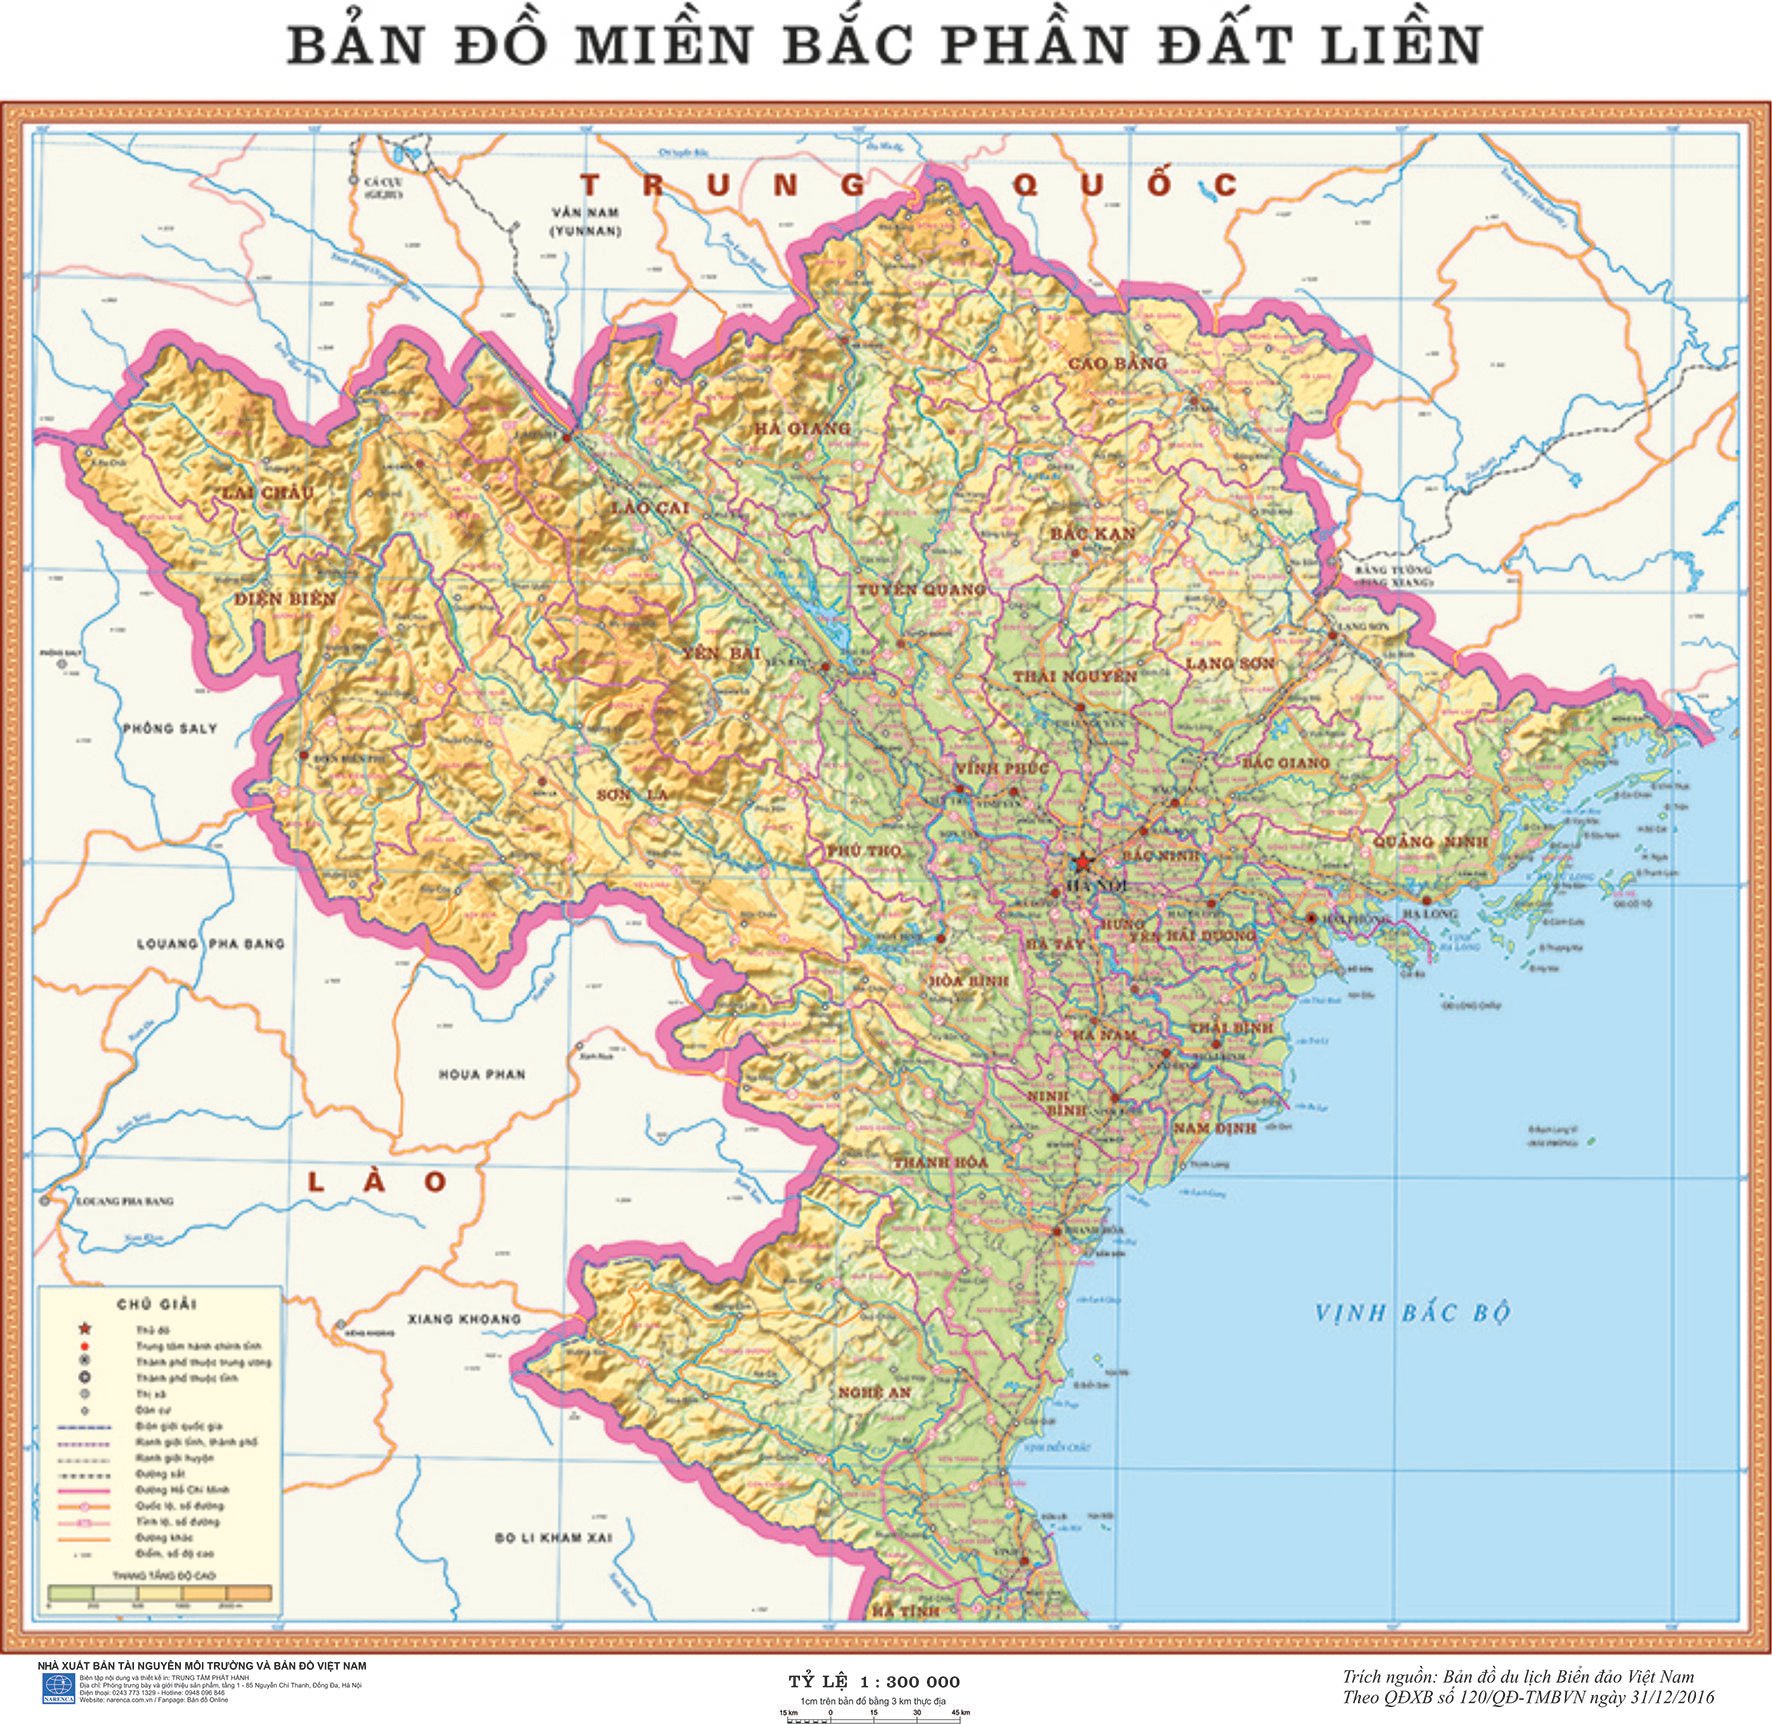 Bản đồ tự nhiên miền Bắc Việt Nam 2024 sẽ đưa bạn đến với những khu rừng nguyên sinh, thác nước, đất thổ cẩm tính và đồi núi bạt ngàn. Qua những hình ảnh tuyệt đẹp này, bạn sẽ có thêm nguồn động lực để bảo vệ và đưa ra những chính sách bảo vệ tài nguyên thiên nhiên của miền Bắc.